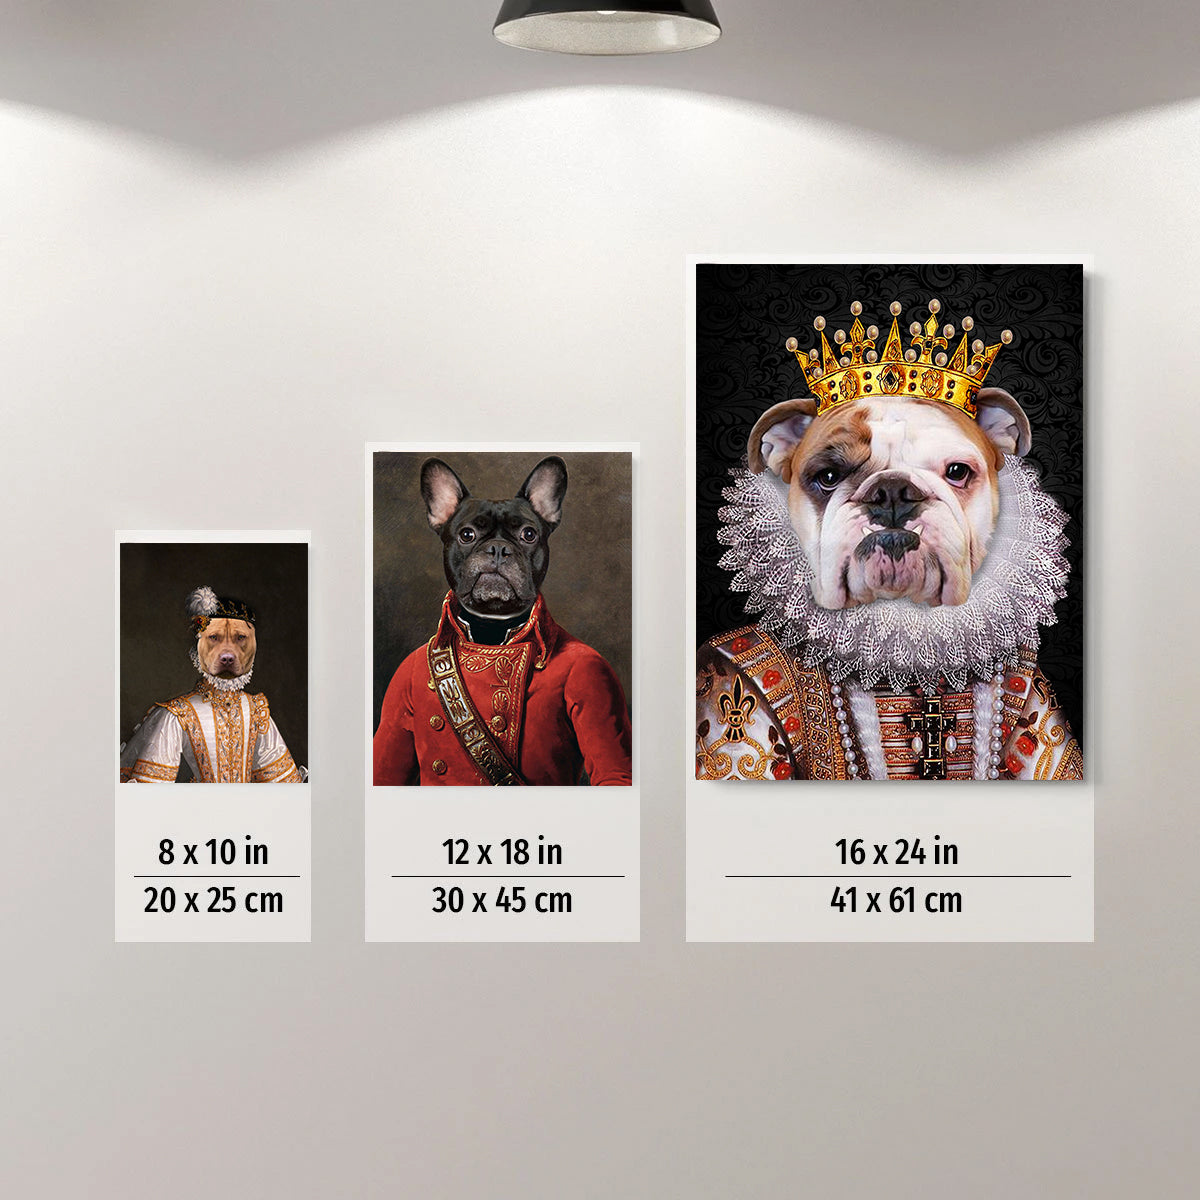 The Angel Custom Pet Portrait  Poster - Noble Pawtrait